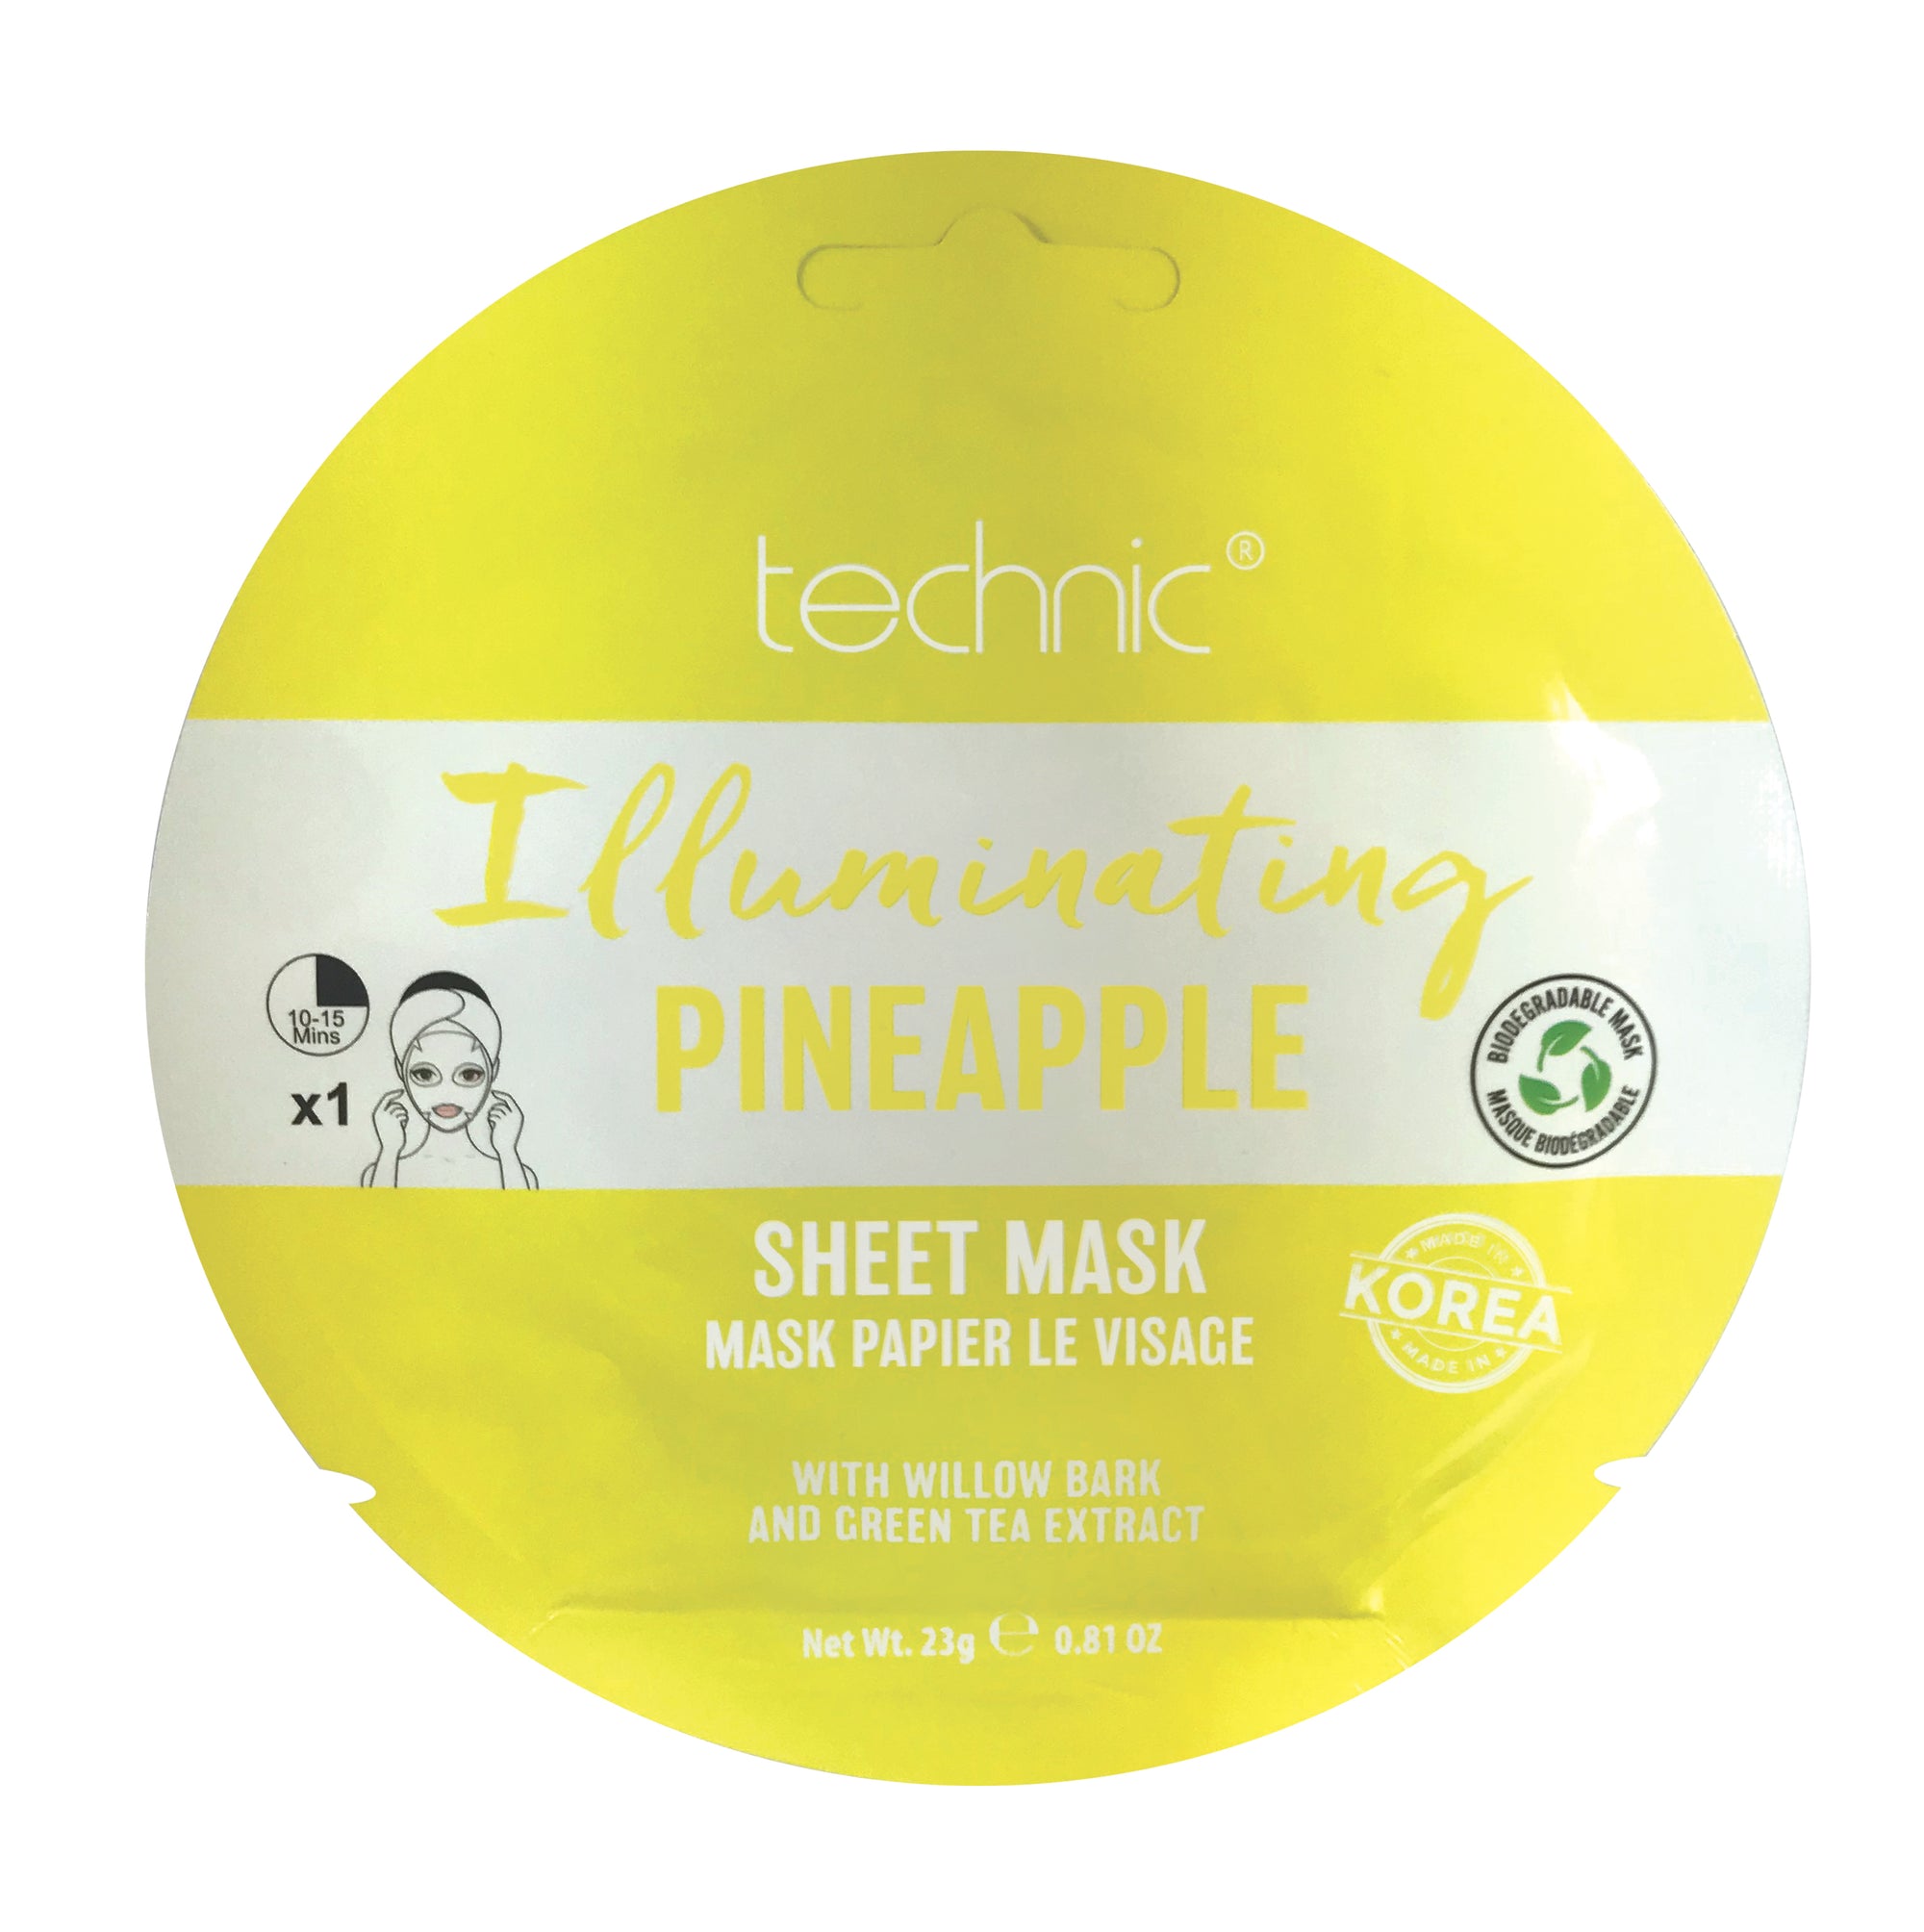 Technic Illuminating Pineapple Sheet Mask